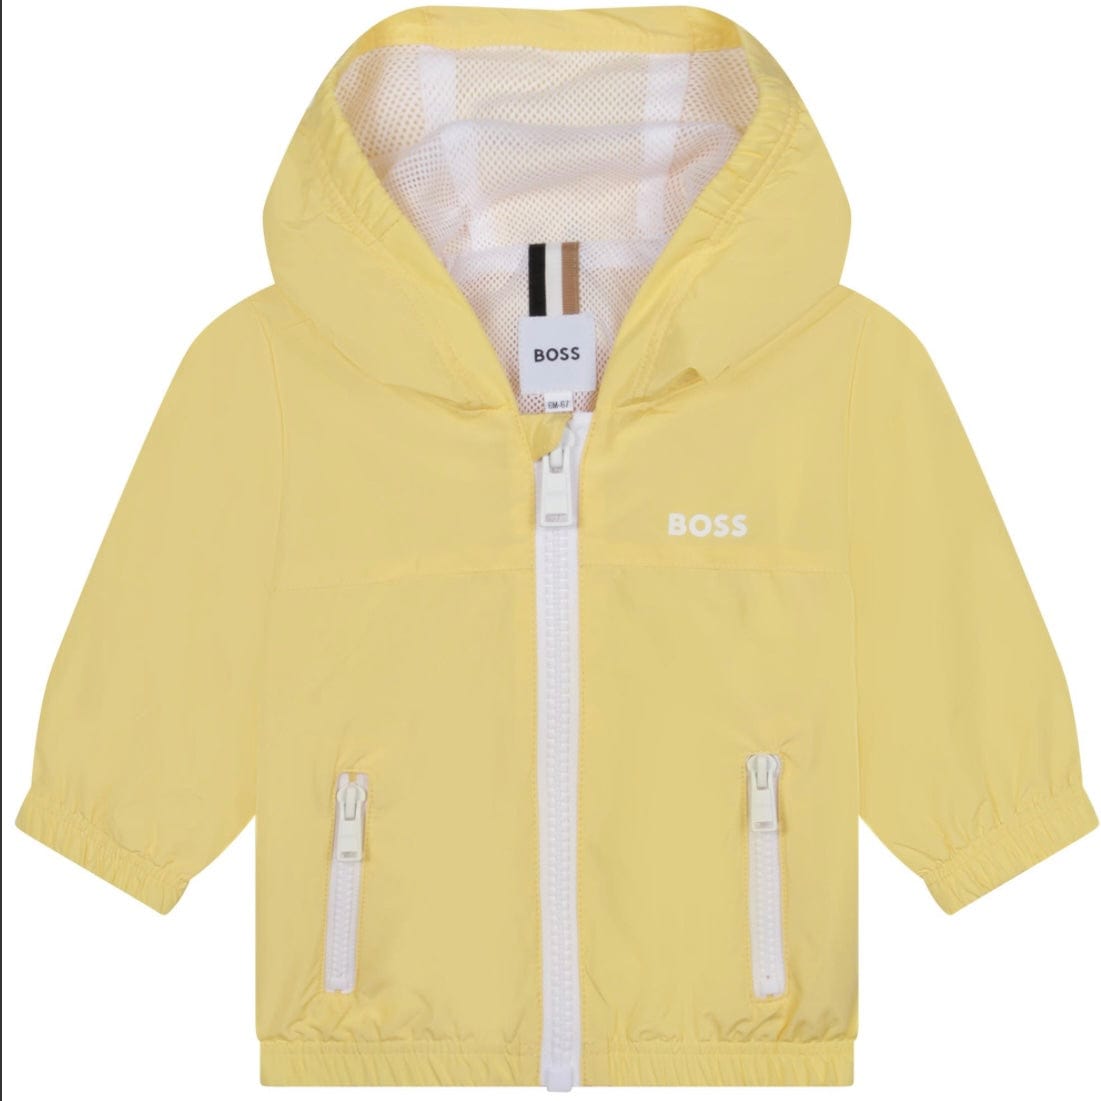 HUGO BOSS - Windbreaker Jacket -  Yellow